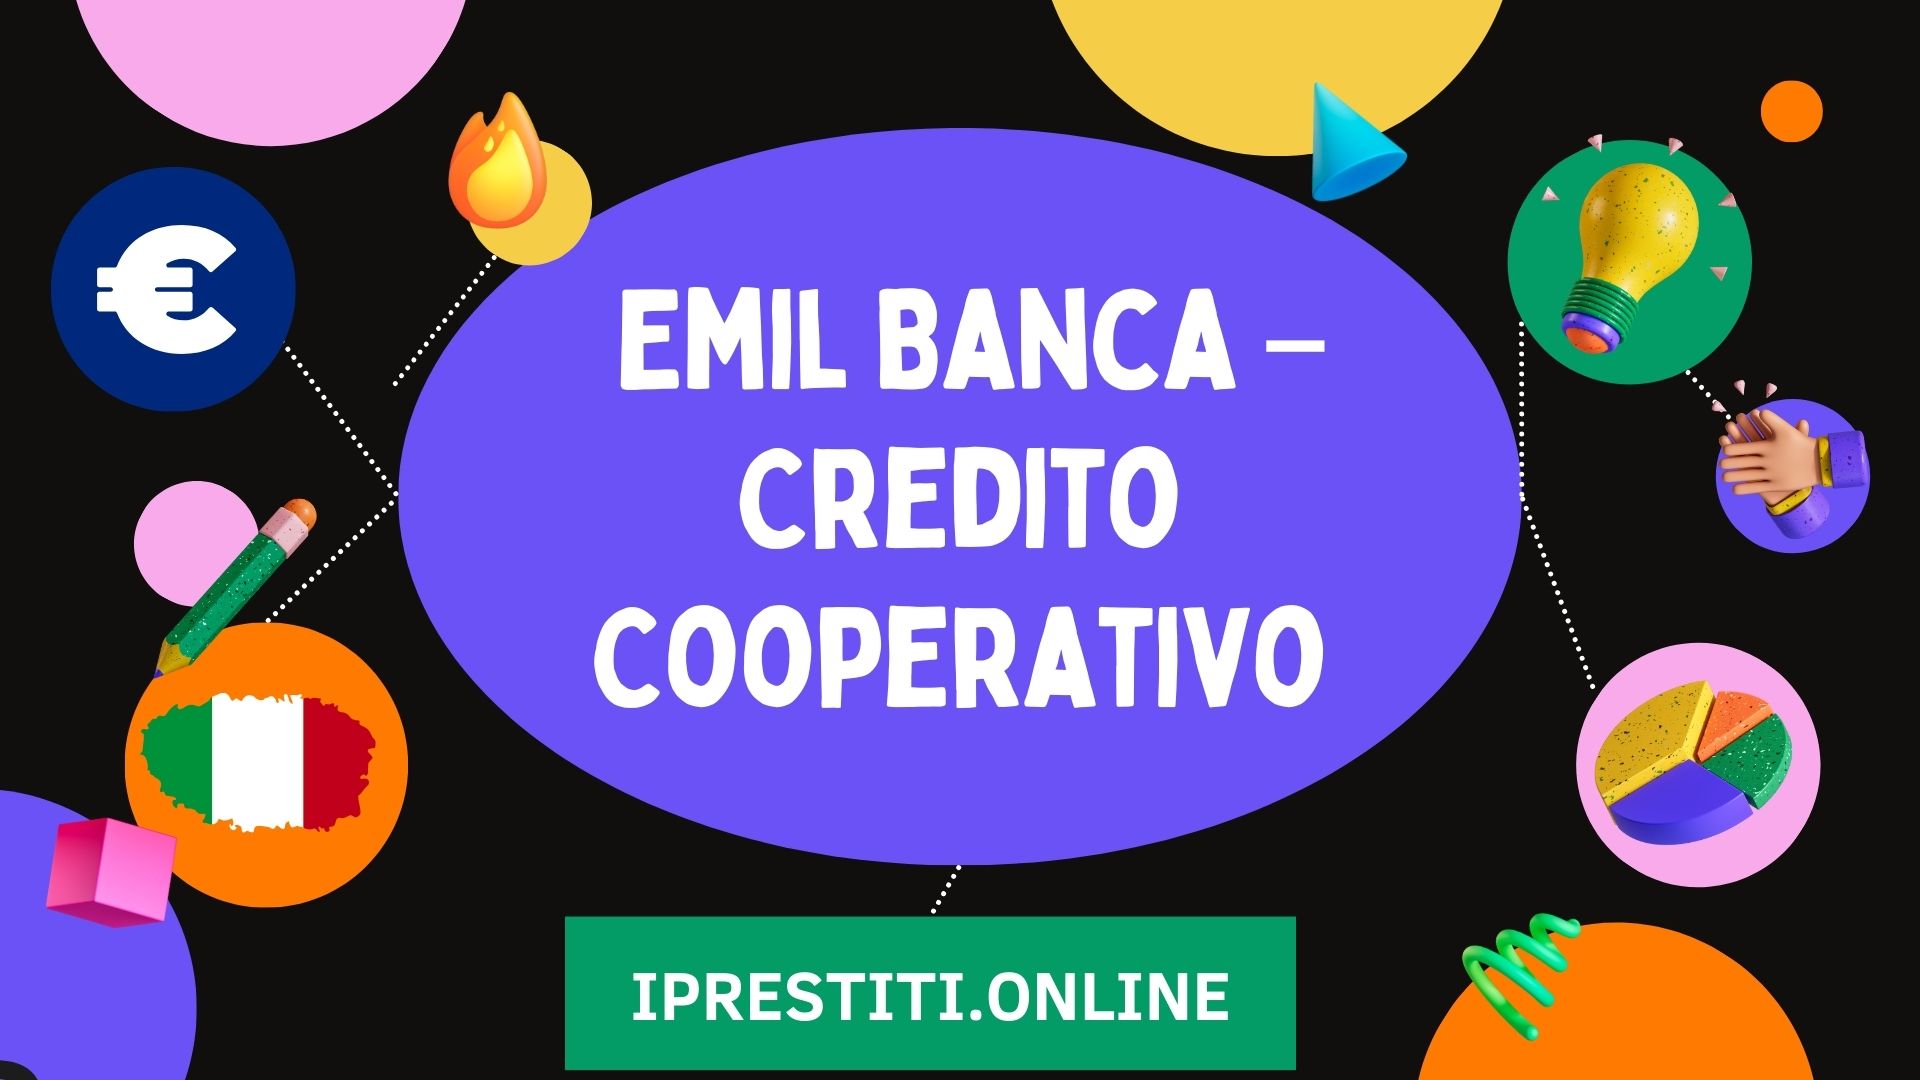 emil banca credito cooperativo